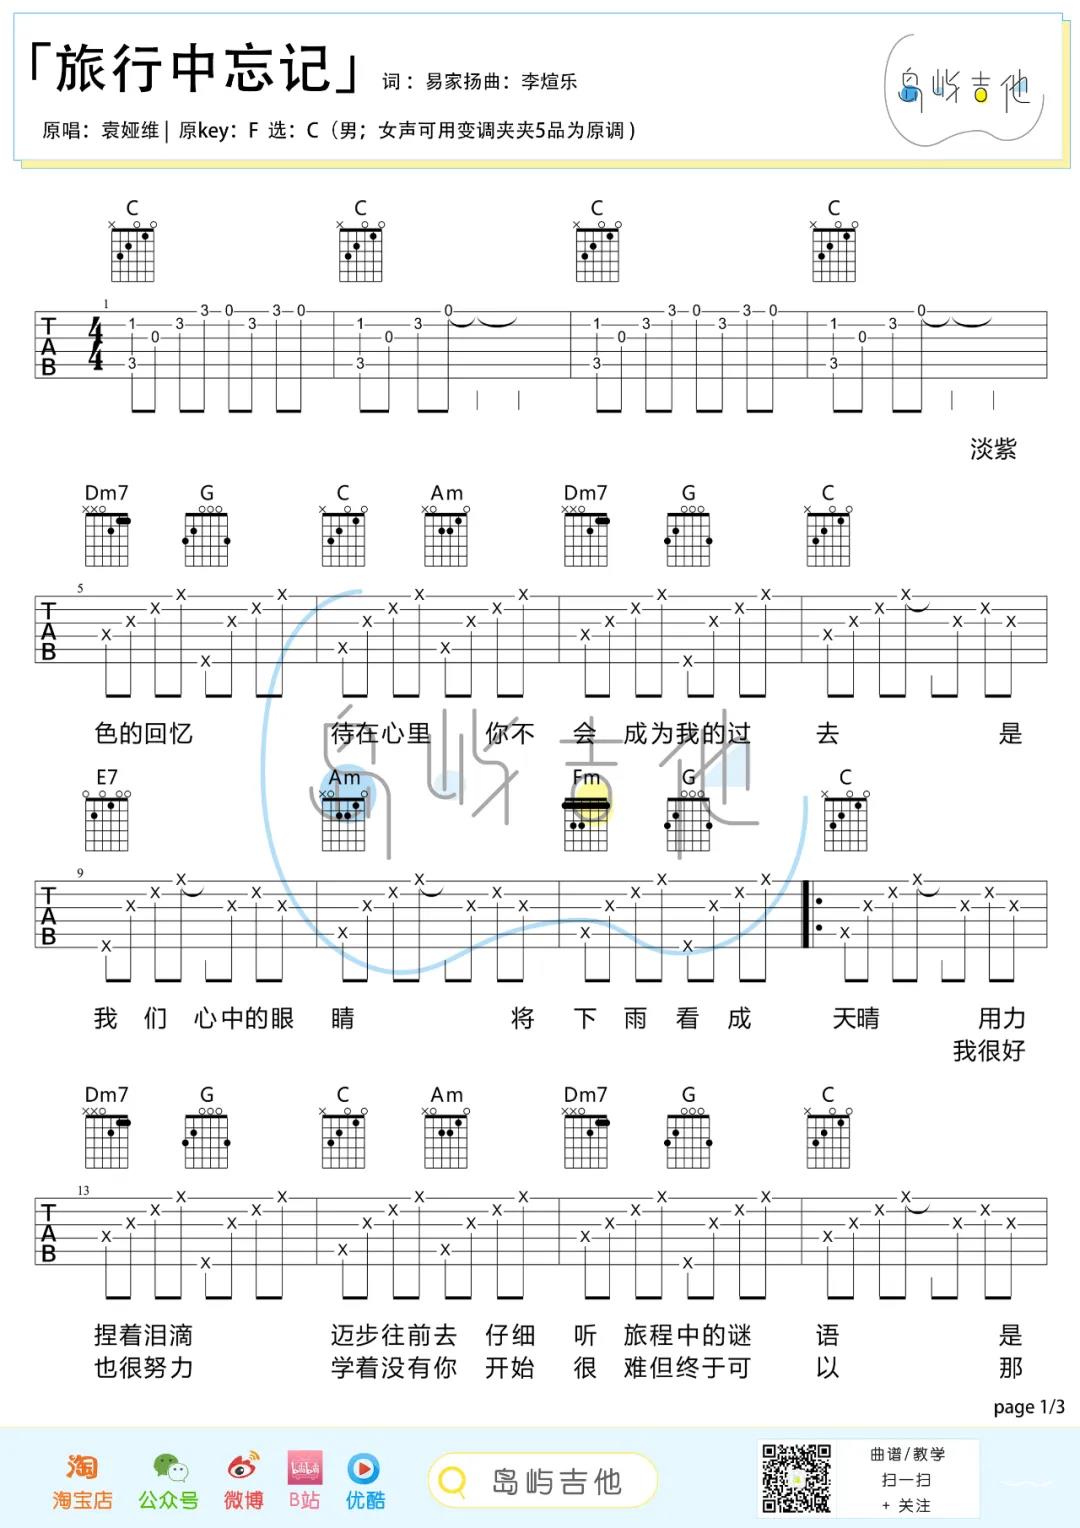 袁娅维《旅行中忘记》吉他谱(C调)-Guitar Music Score - GTP吉他谱